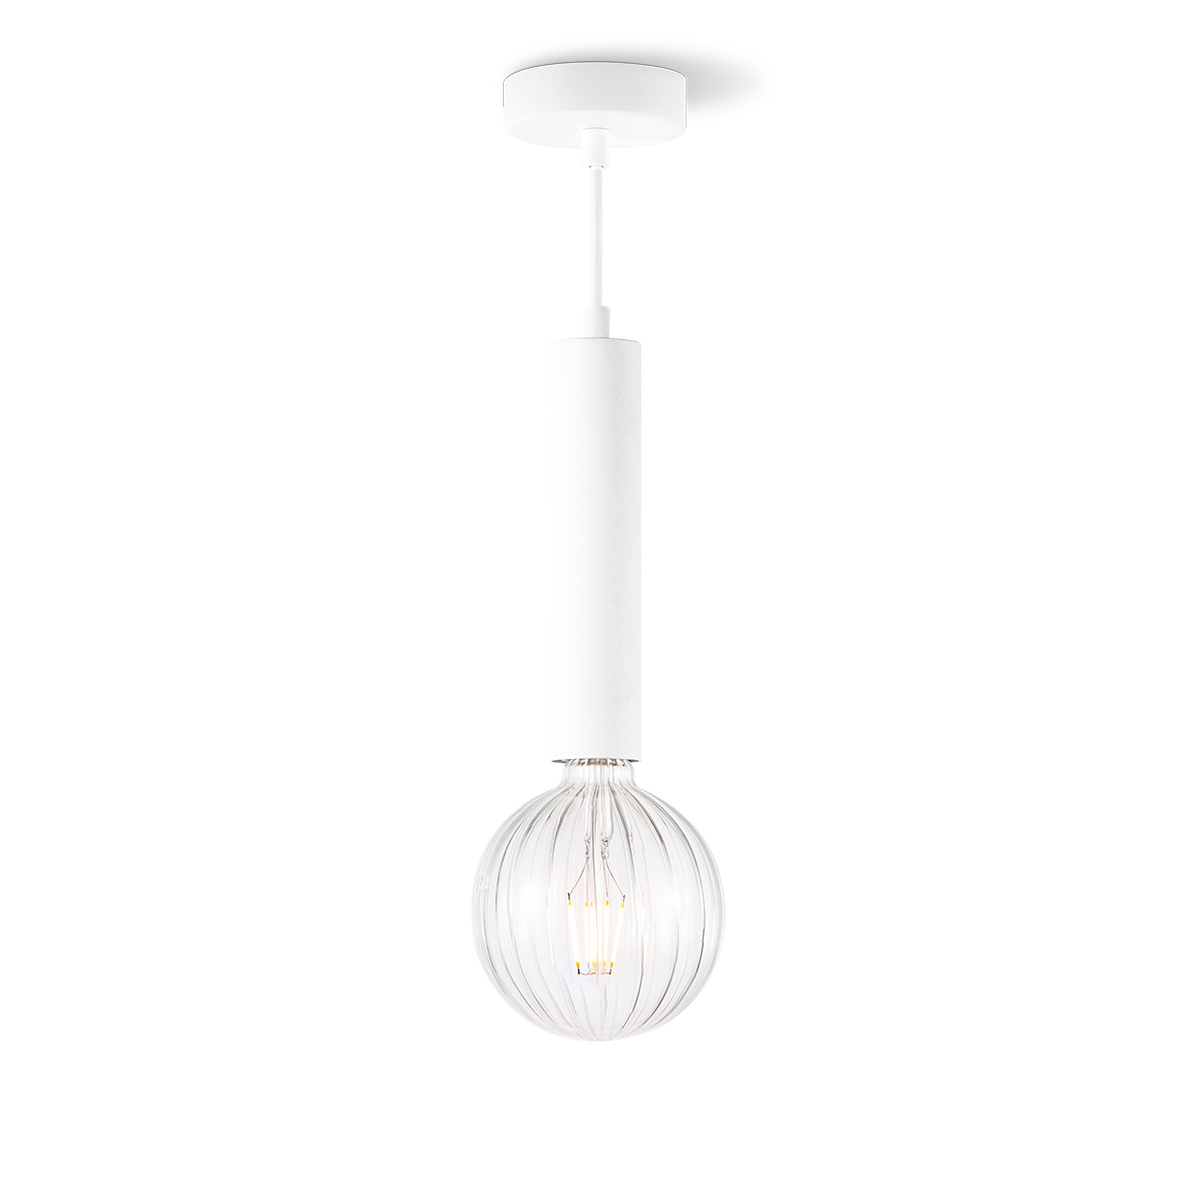 Tangla lighting - TLP4002-01SW - LED pendant lamp 1 Light - metal in sand white - pillar - E27